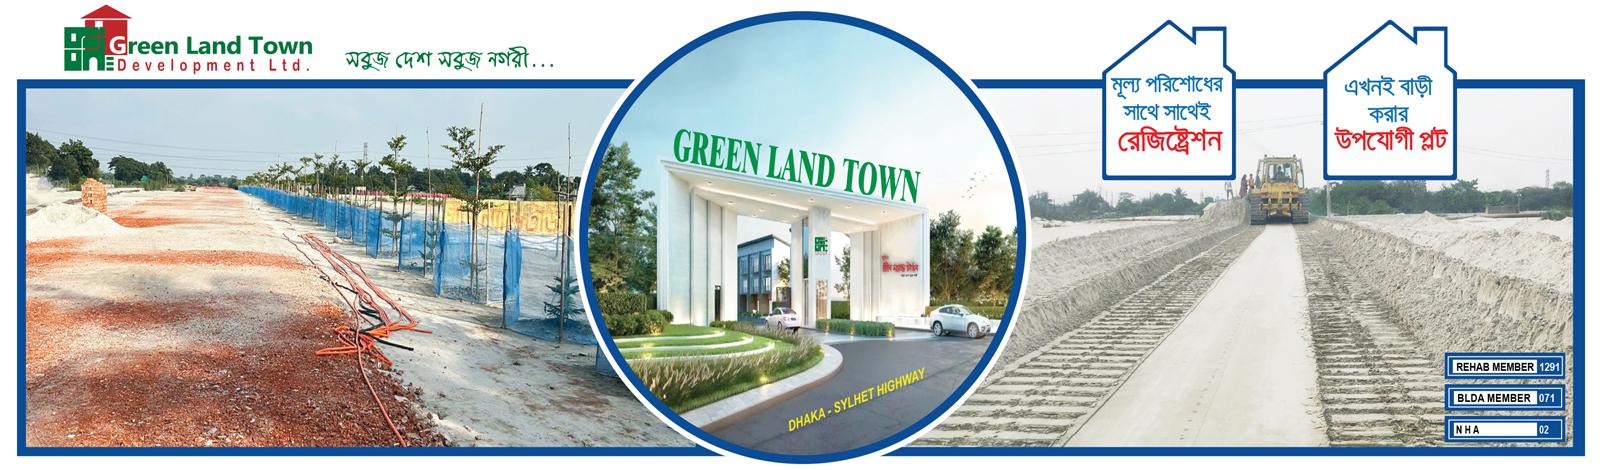 Green Land Town Development Ltd banner